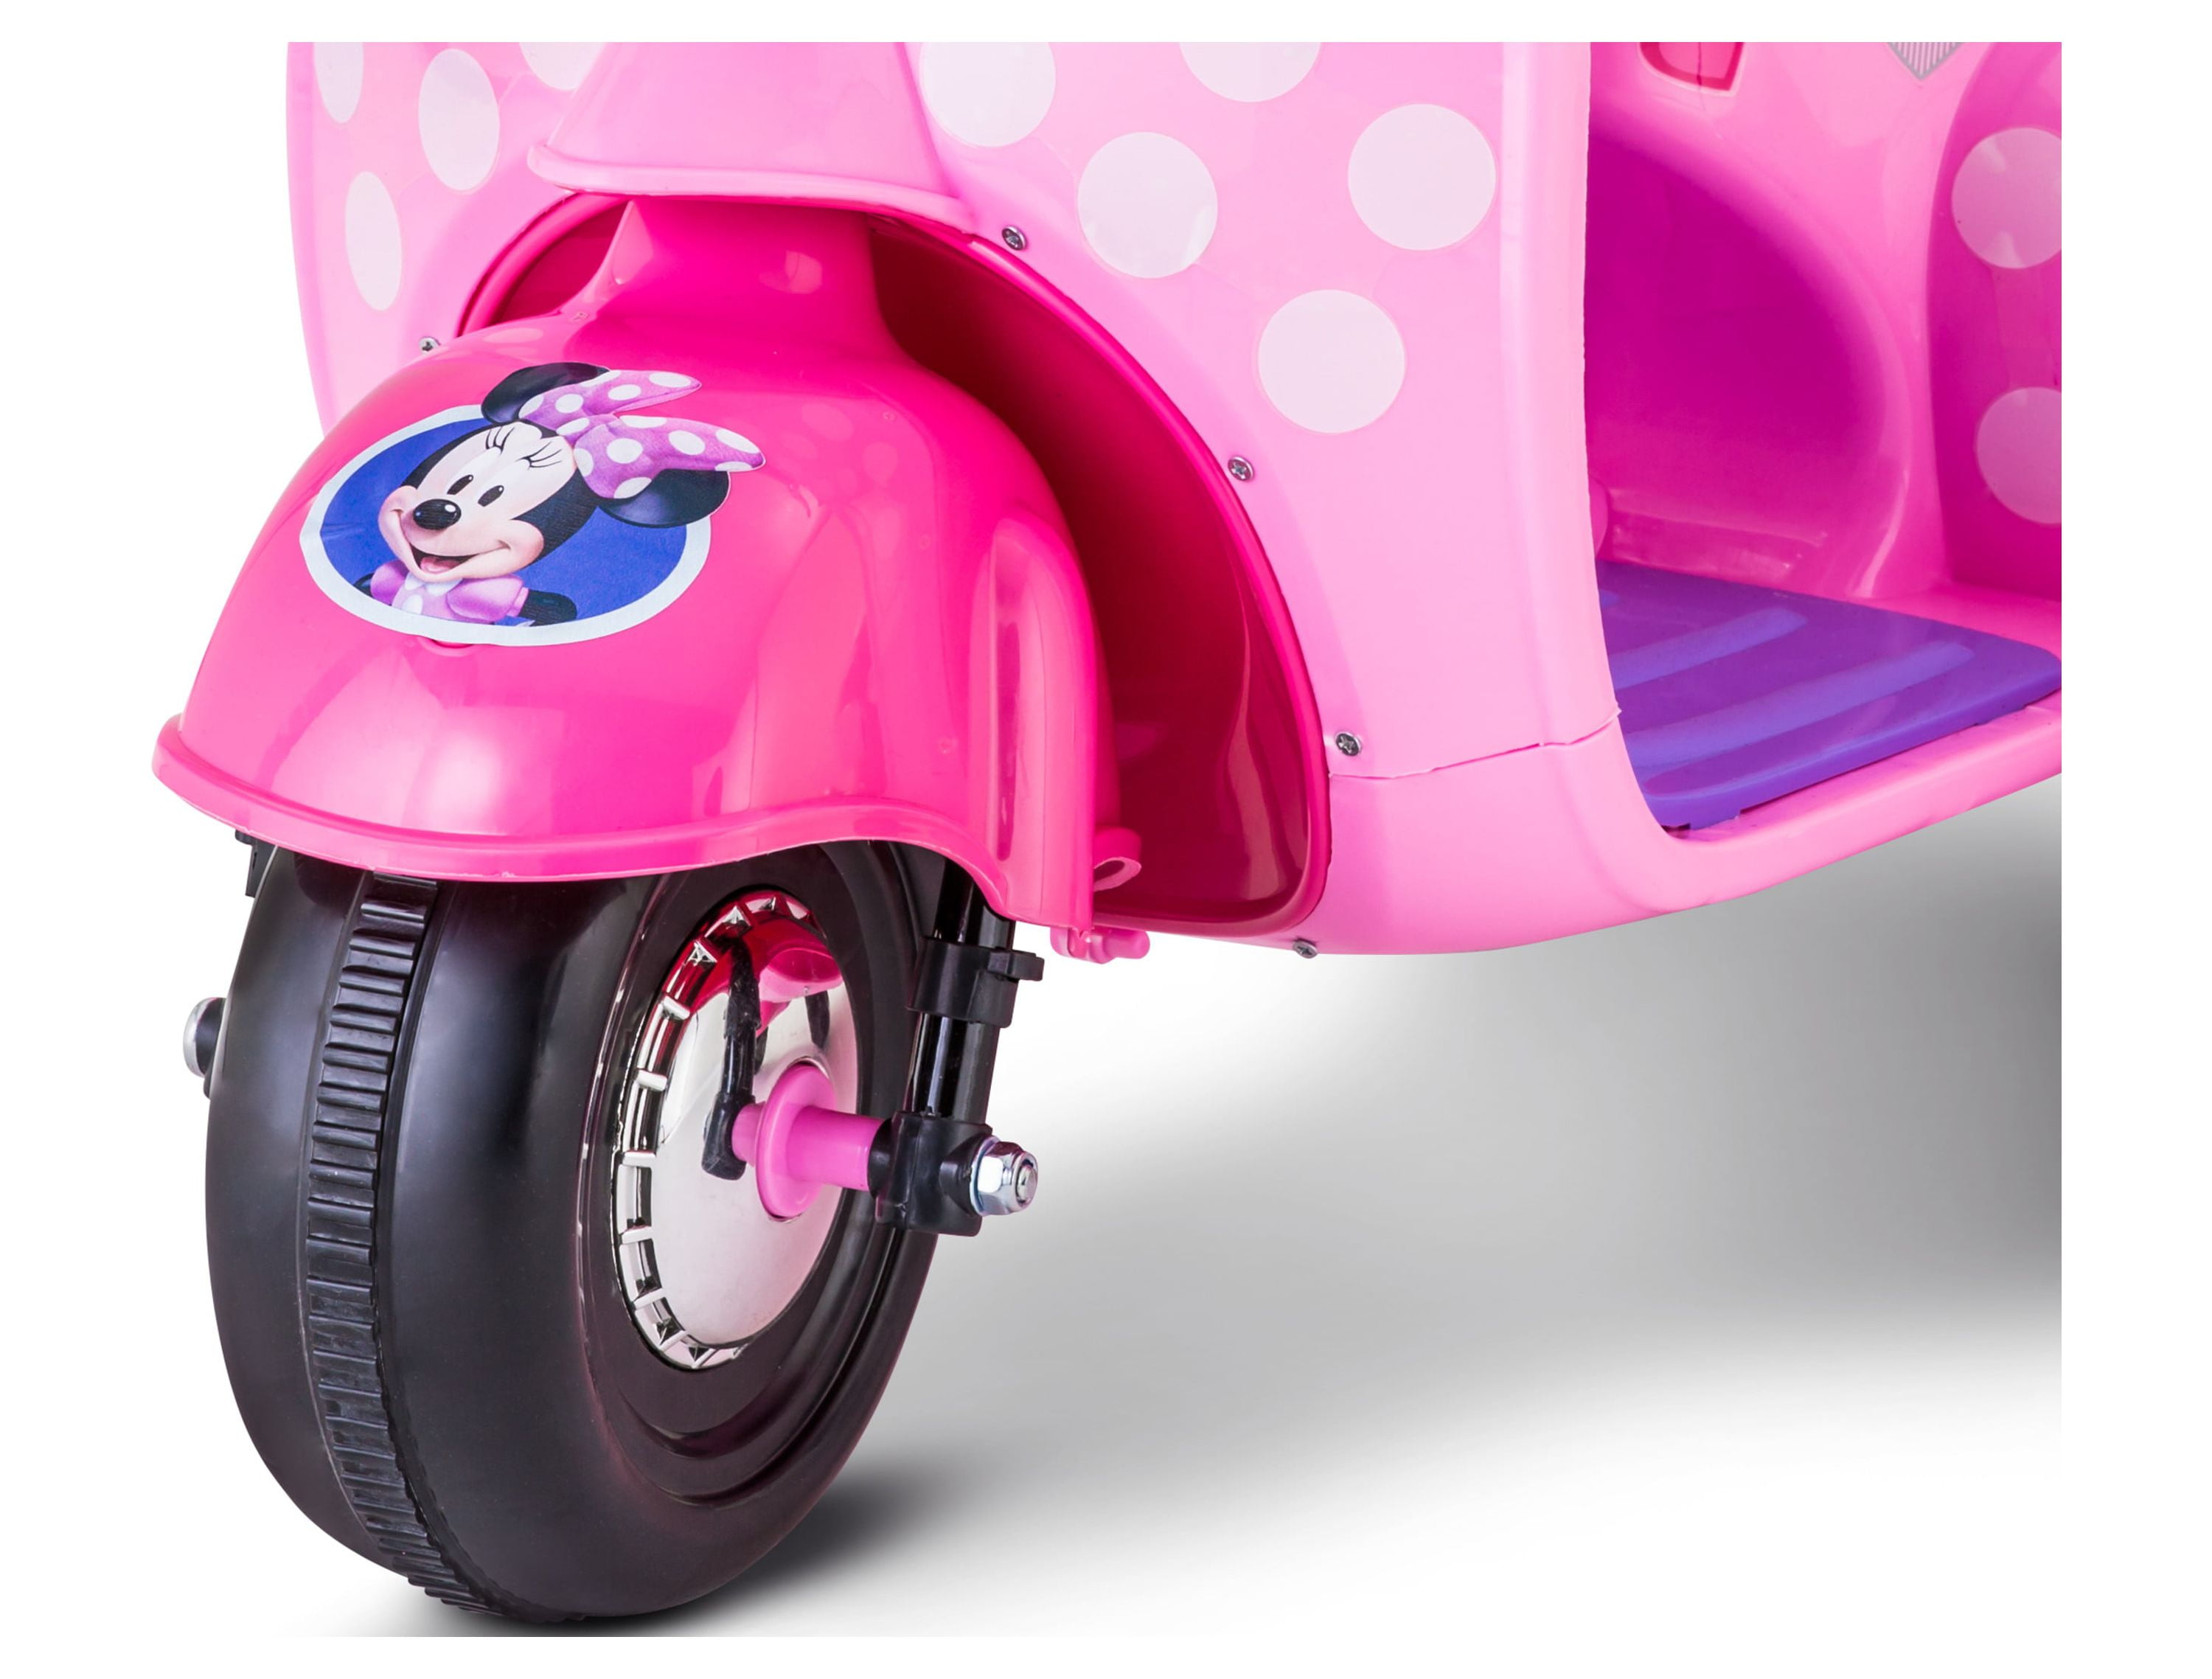 Minnie - Véhicule Scooter avec Side-Car et Figurine 7,5 cm - Jouet